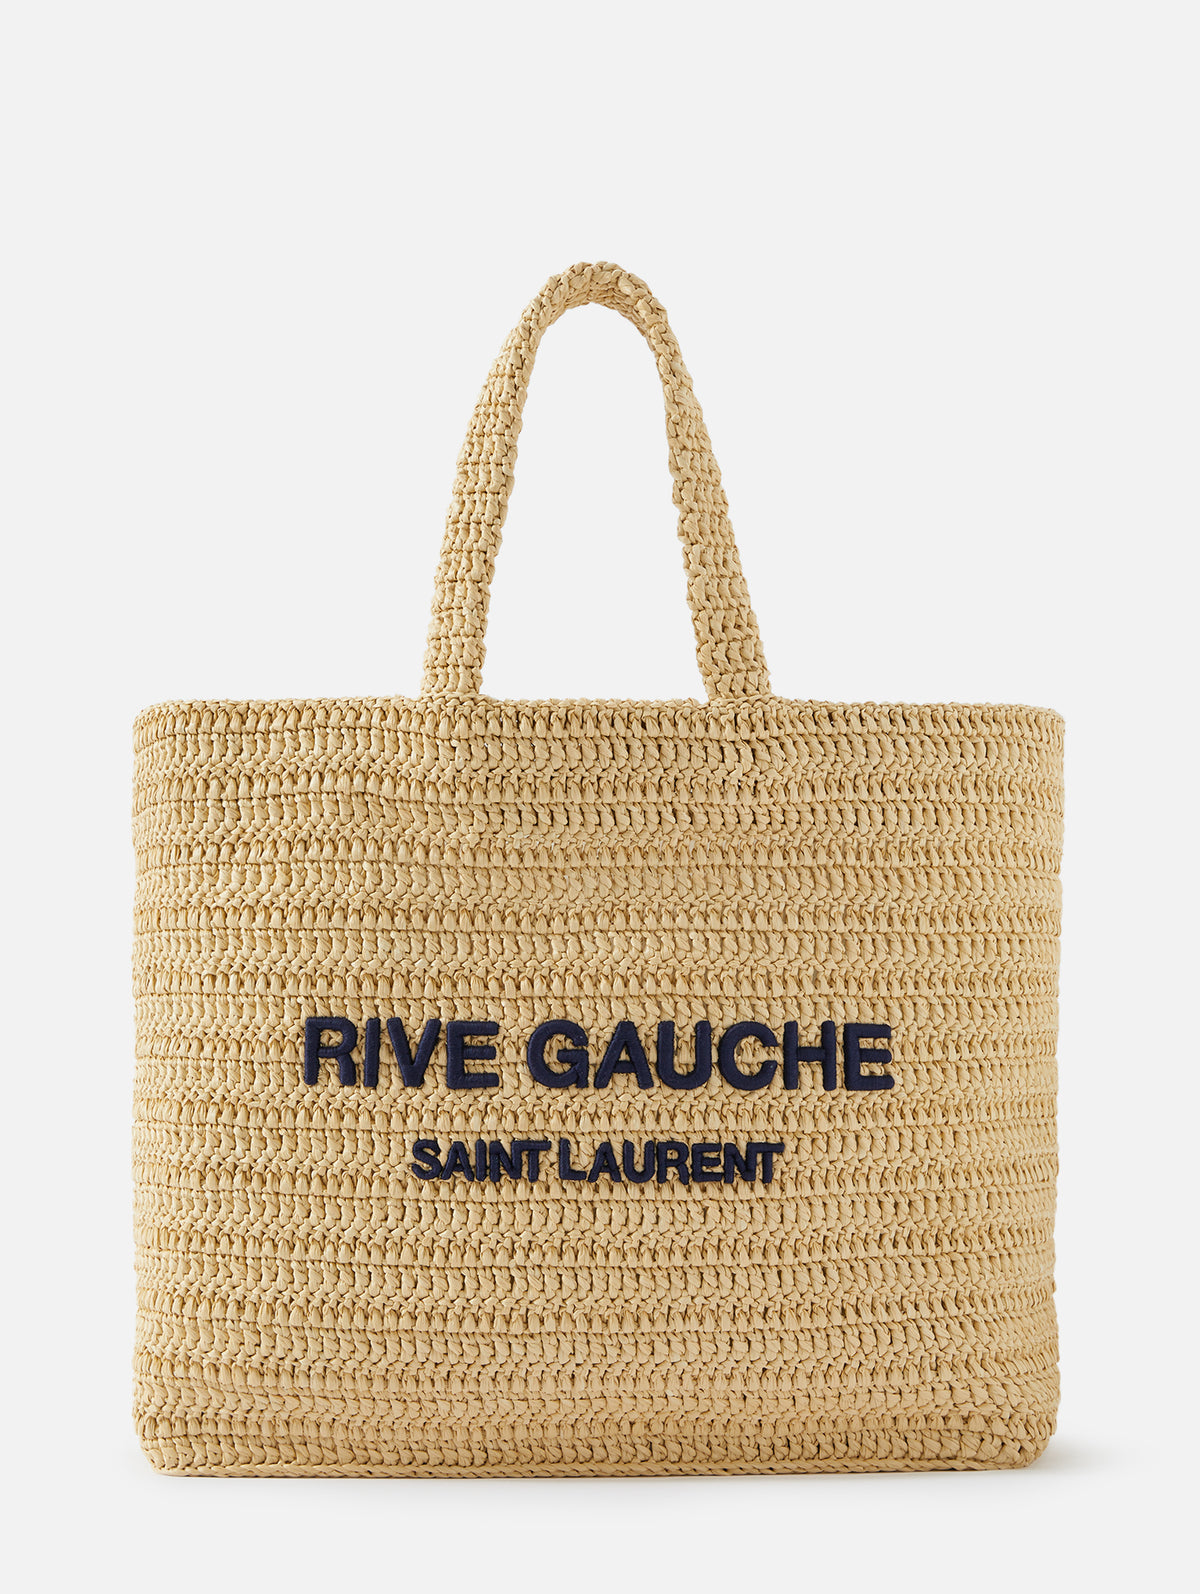 Saint Laurent Rive Gauche Bag In N,a